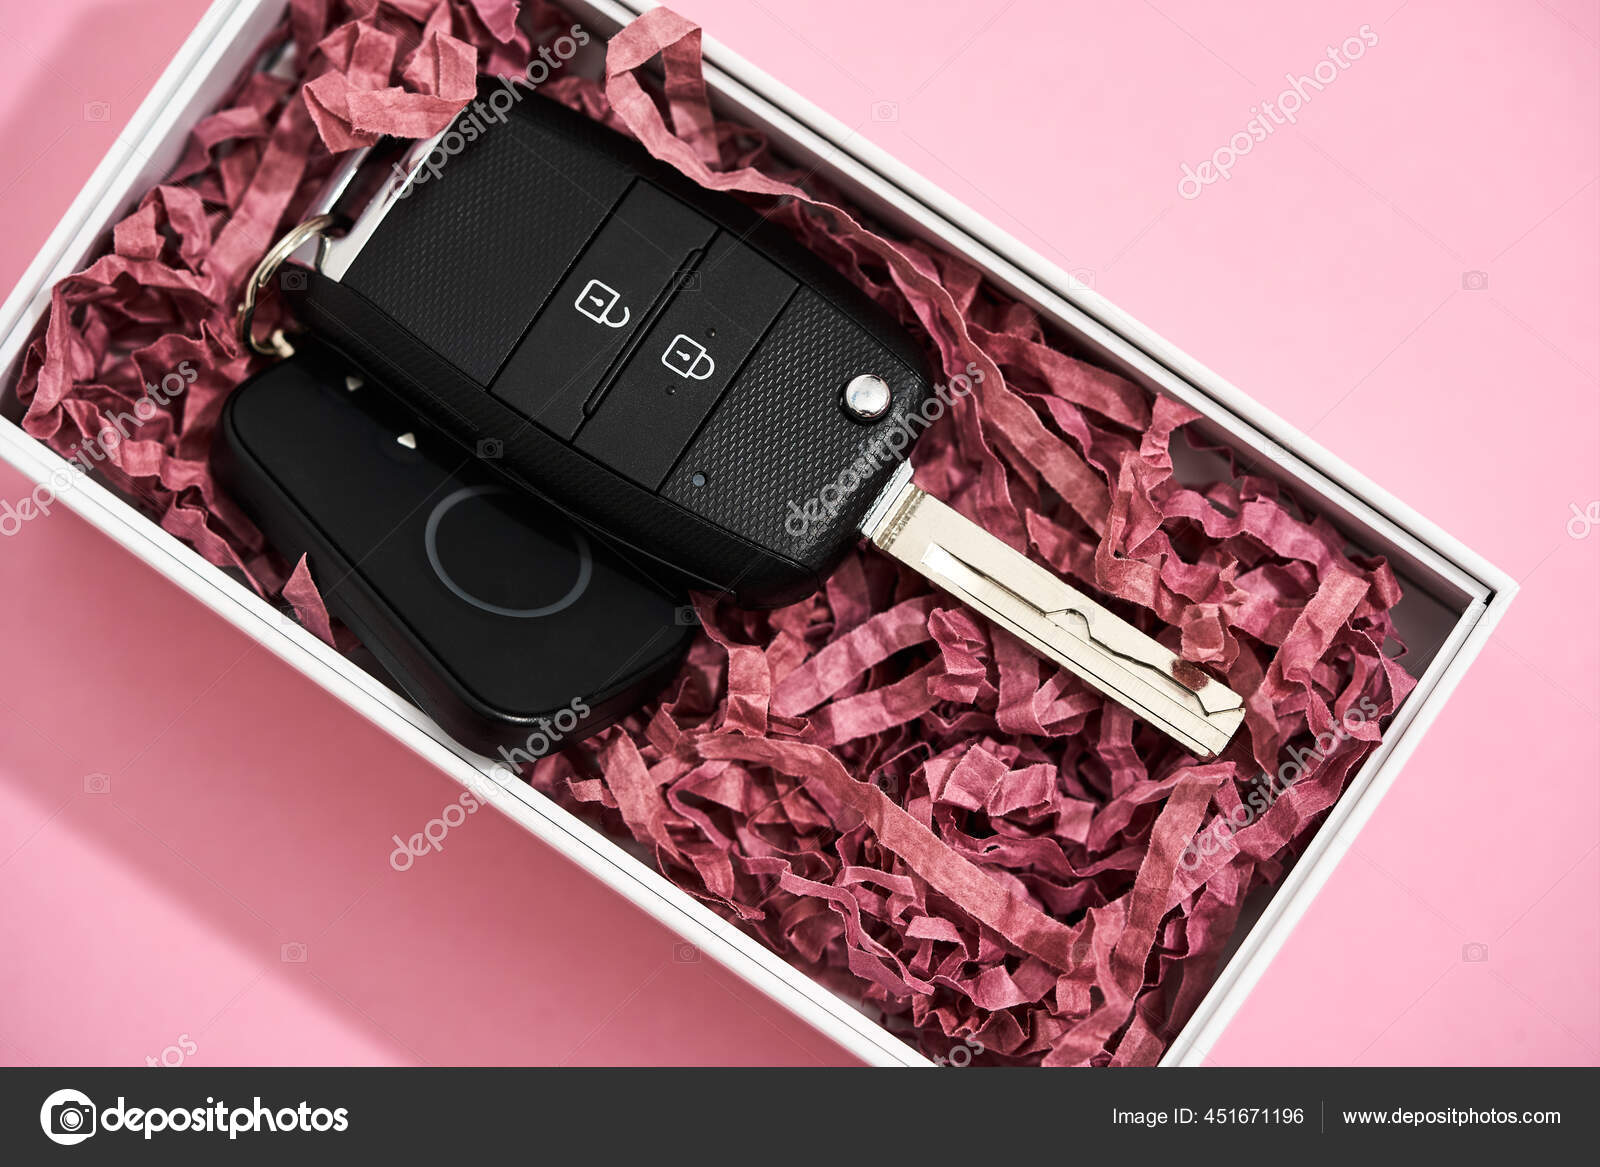 Geschenkbox mit Autoschlüssel - Stockfotografie: lizenzfreie Fotos